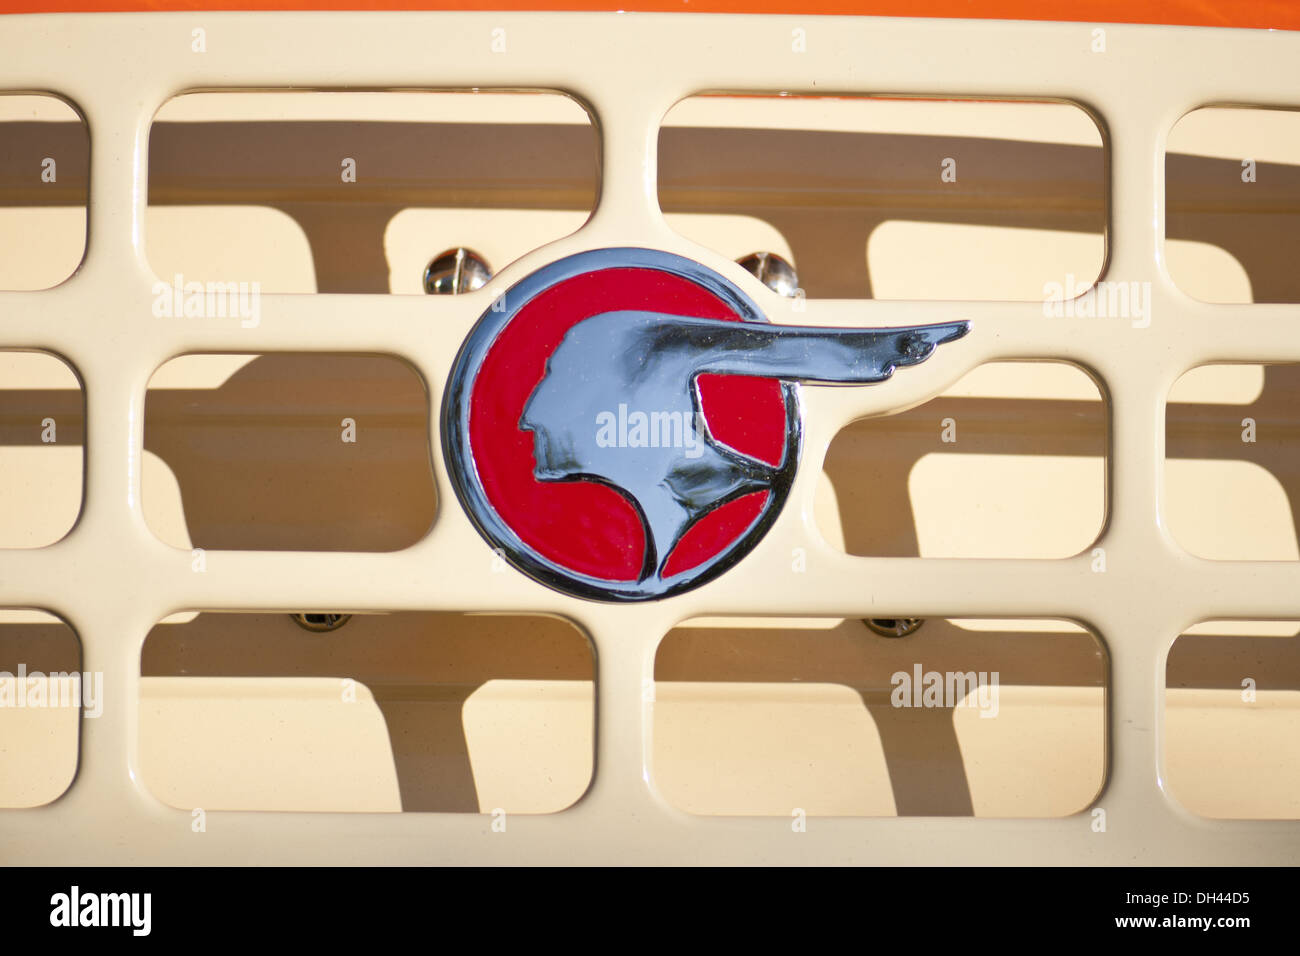 Antique Pontiac car symbol logo Stock Photo